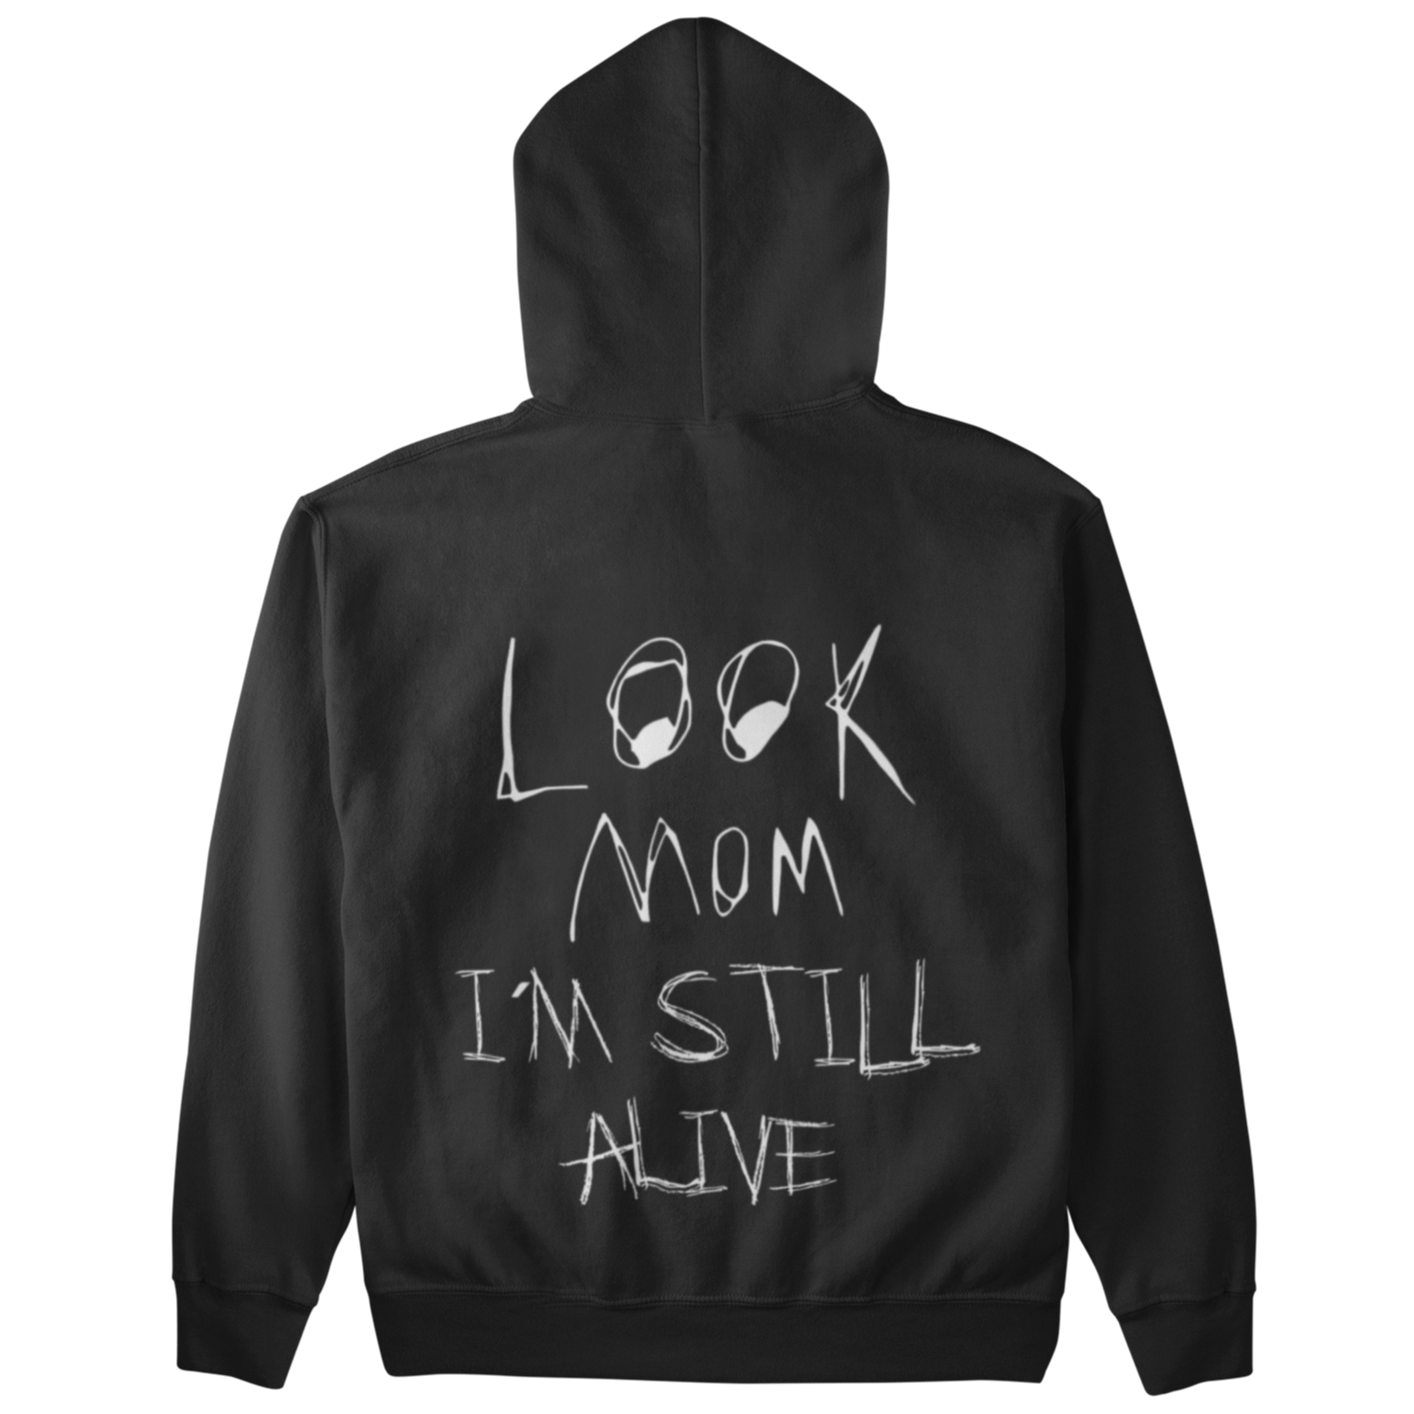 Look Mom - Alive (Backprint)  - Unisex Hoodie